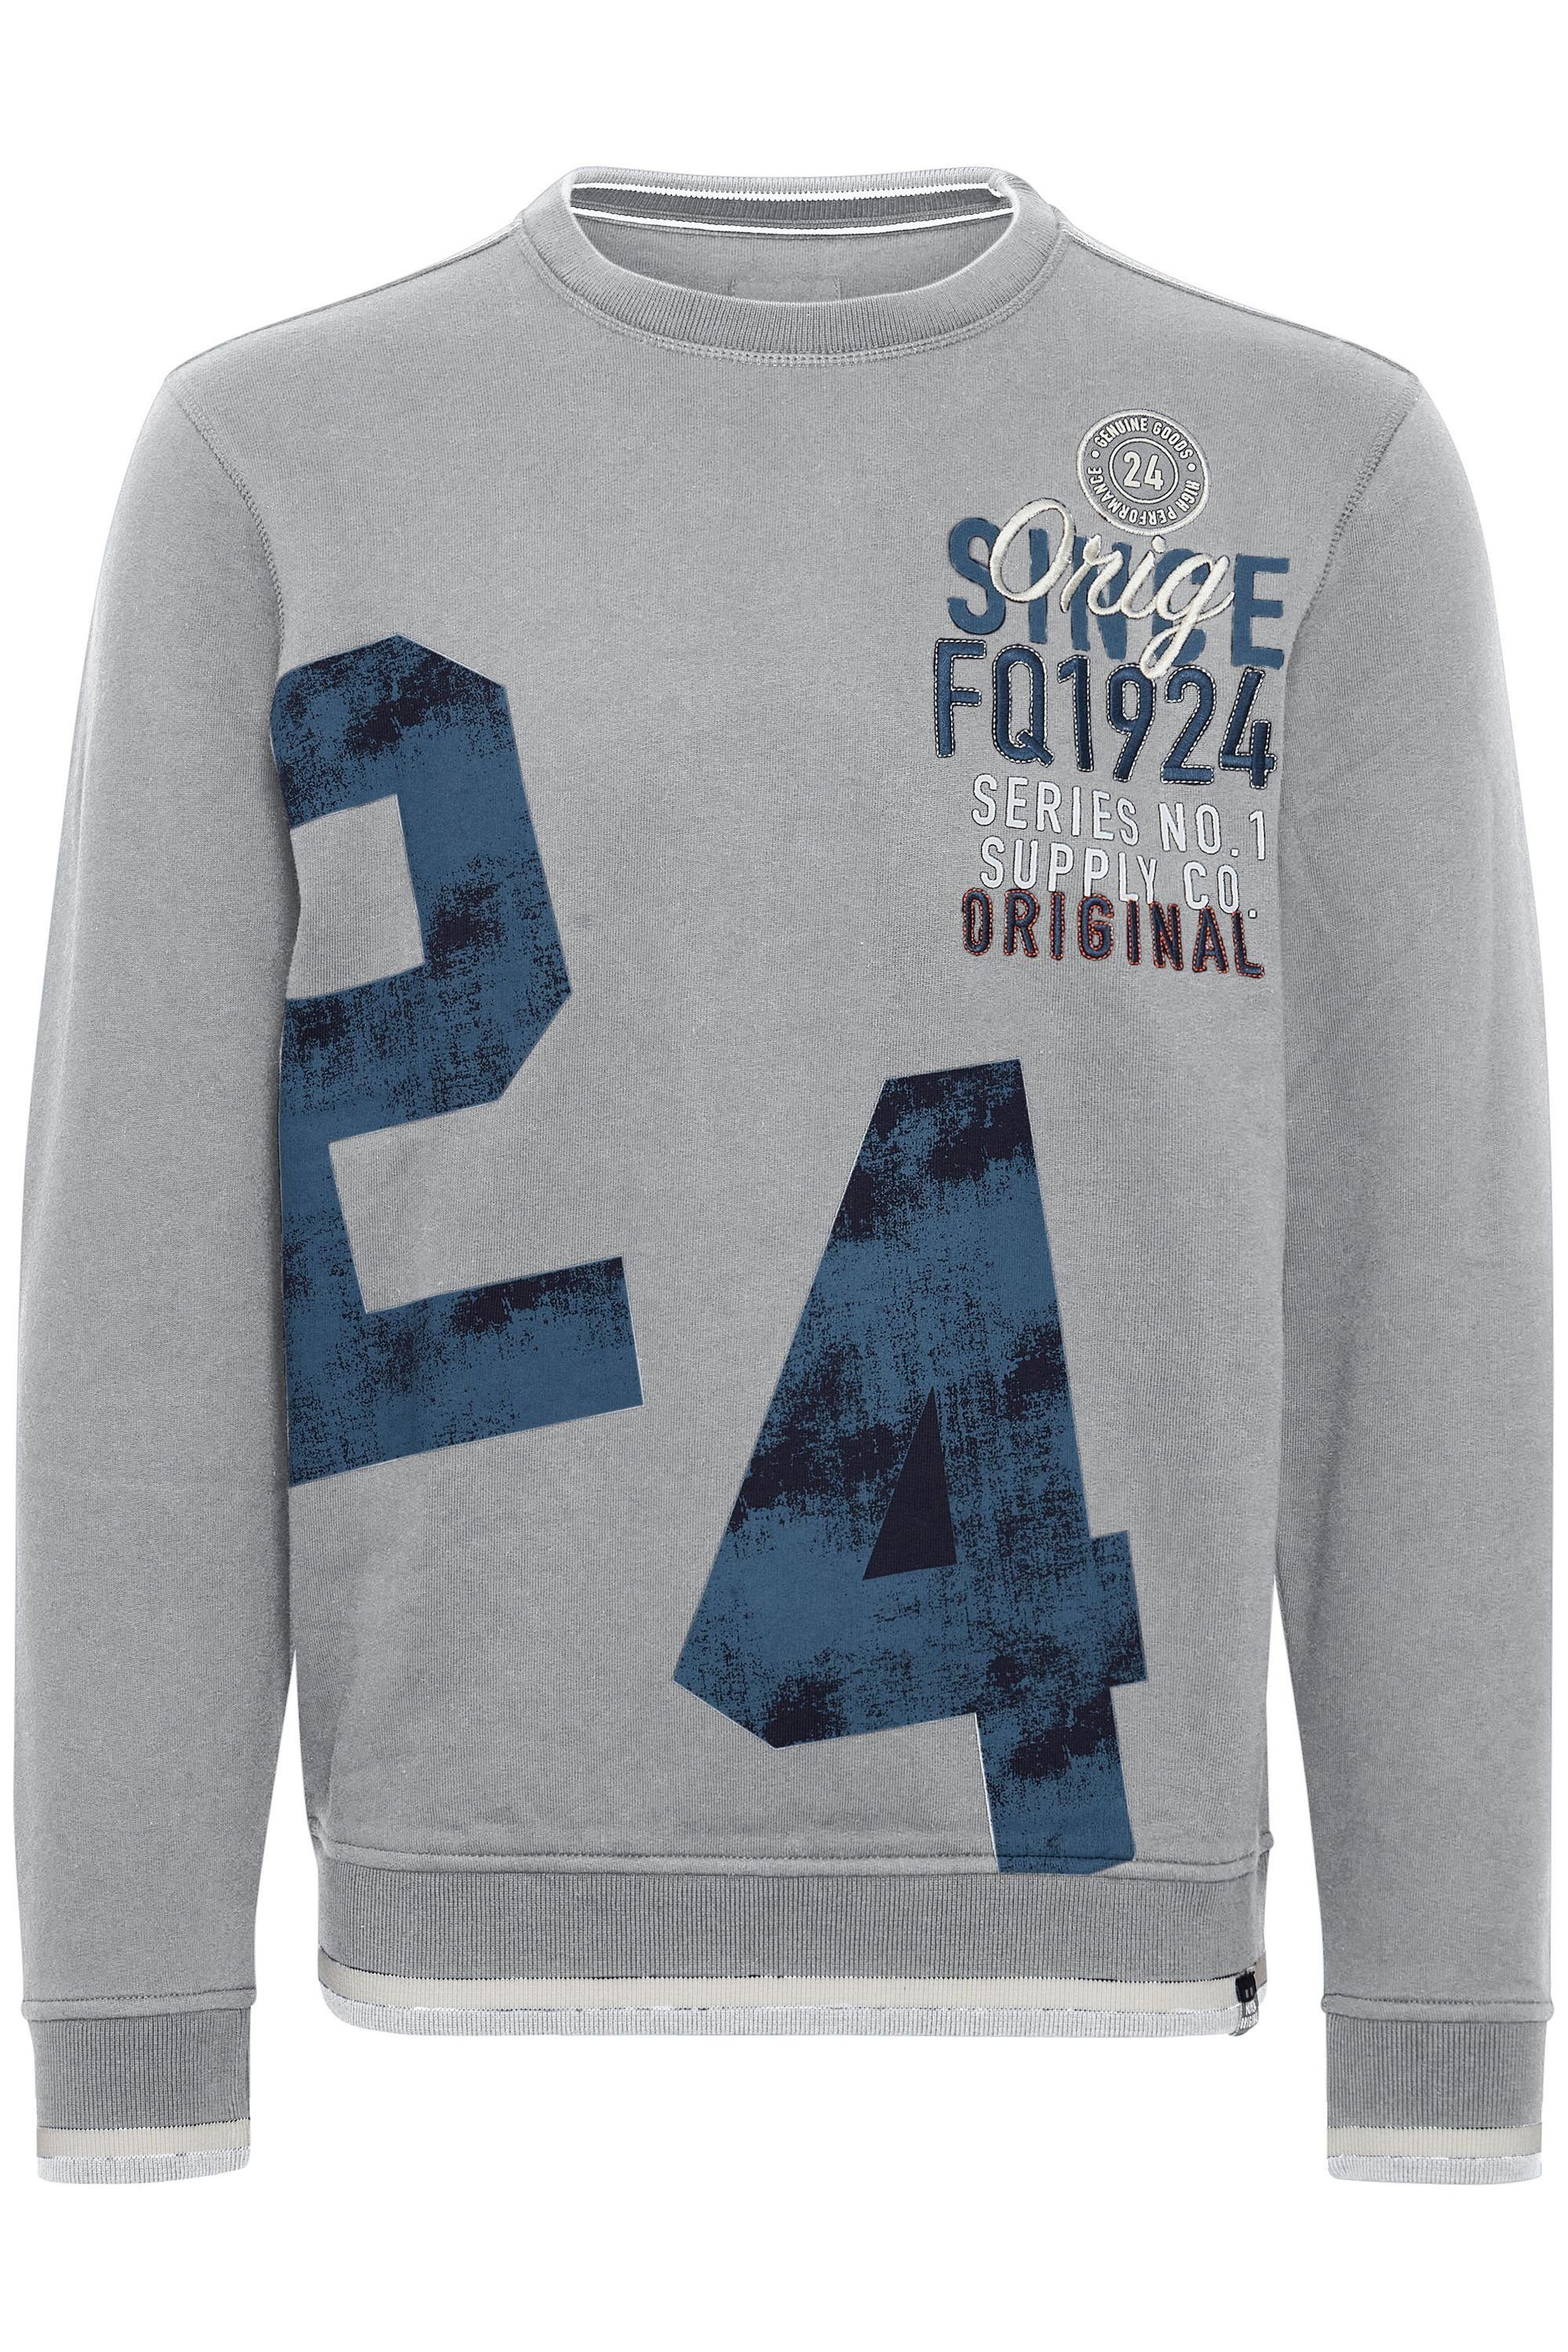 FQ1924 Zink Sweatshirt FQ1924 Mix FQMangus